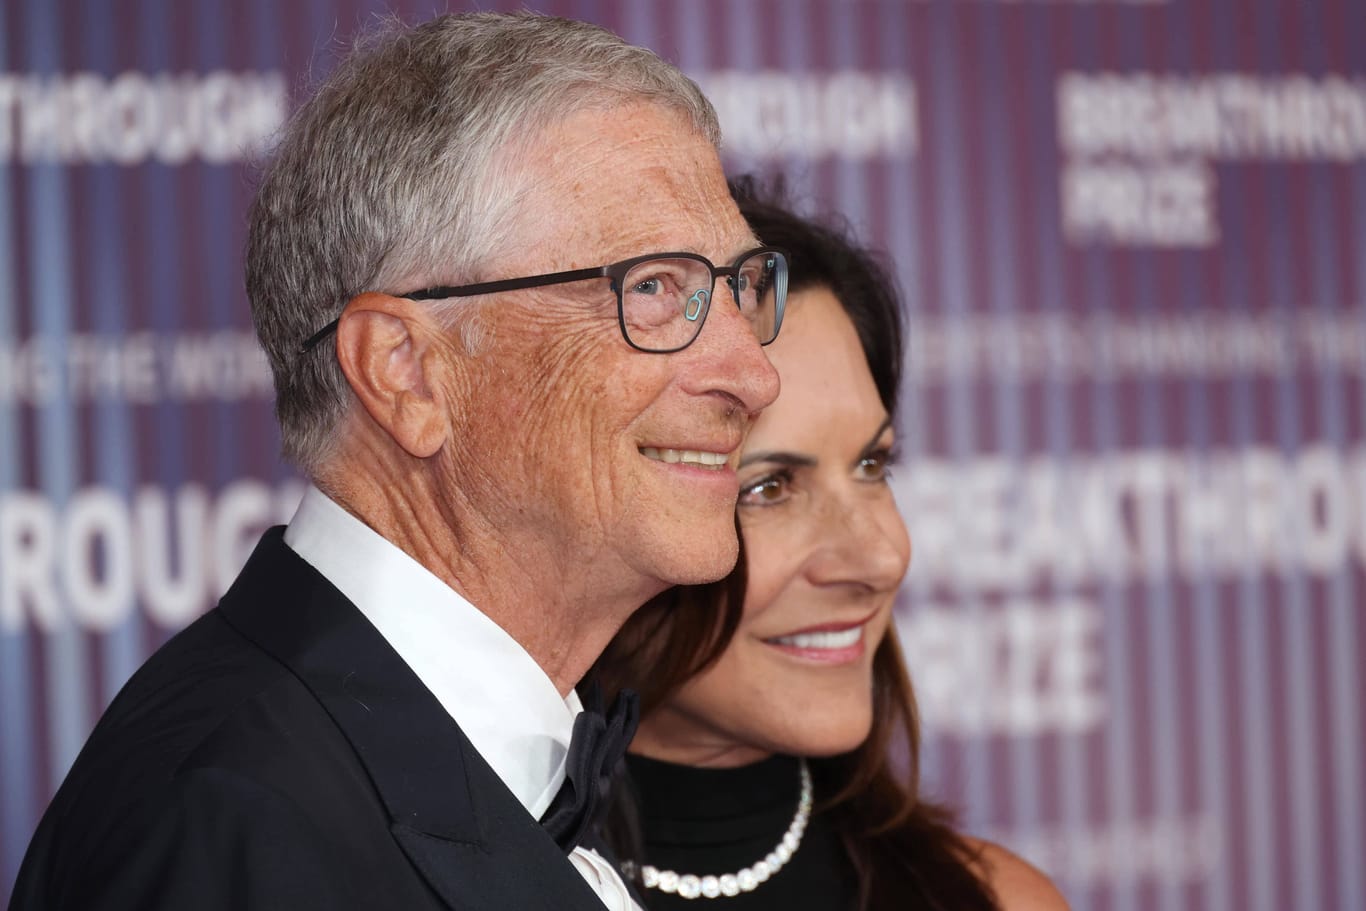 Bill Gates und Paula Hurd: Sie traten das erste Mal gemeinsam vor die Fotografen.